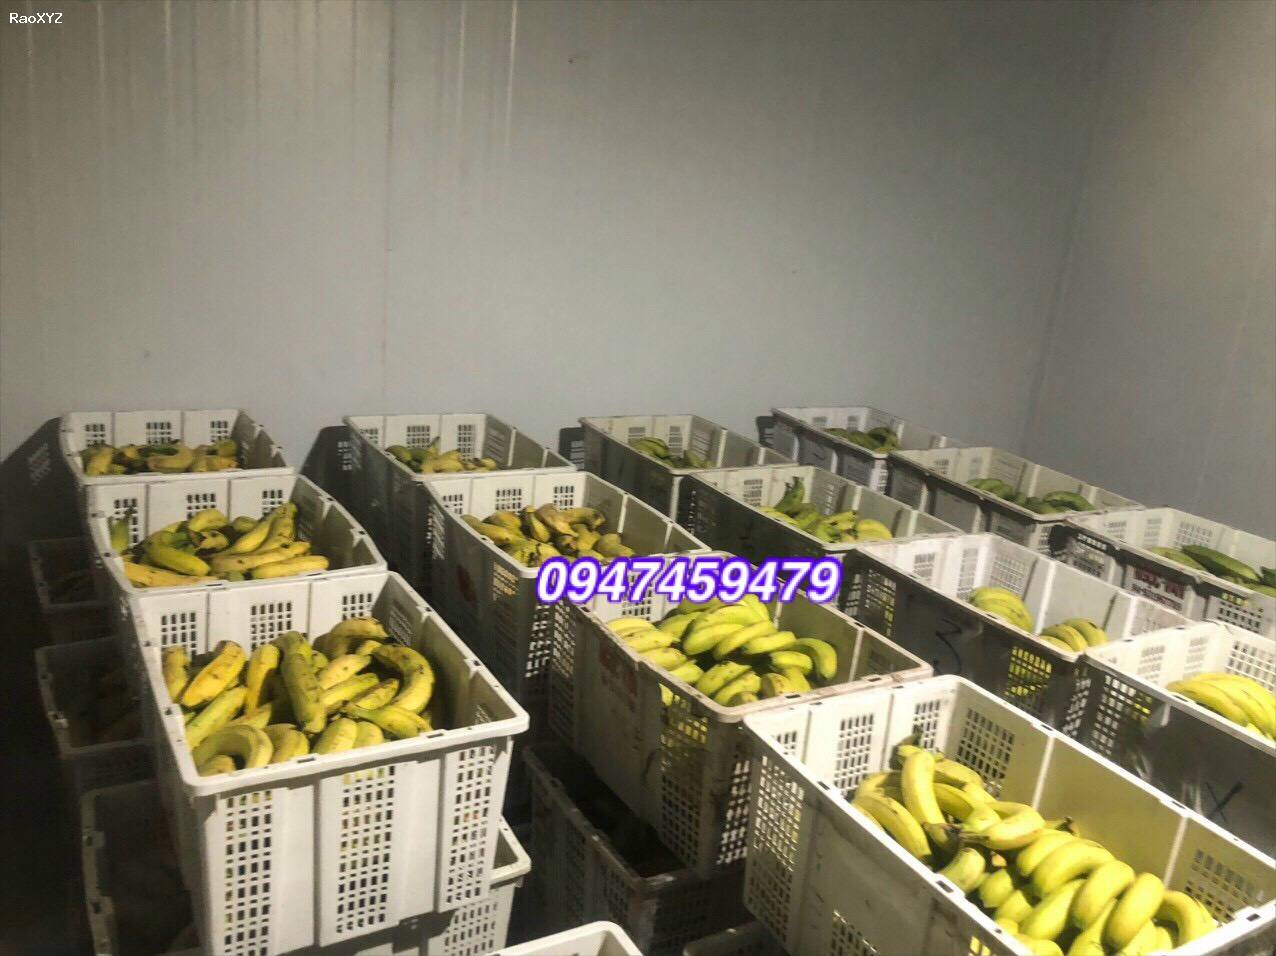 (0947 459 479) Lắp đặt kho lạnh trữ trái cây, củ quả Tại Long An, Làm kho lạnh tại Long An